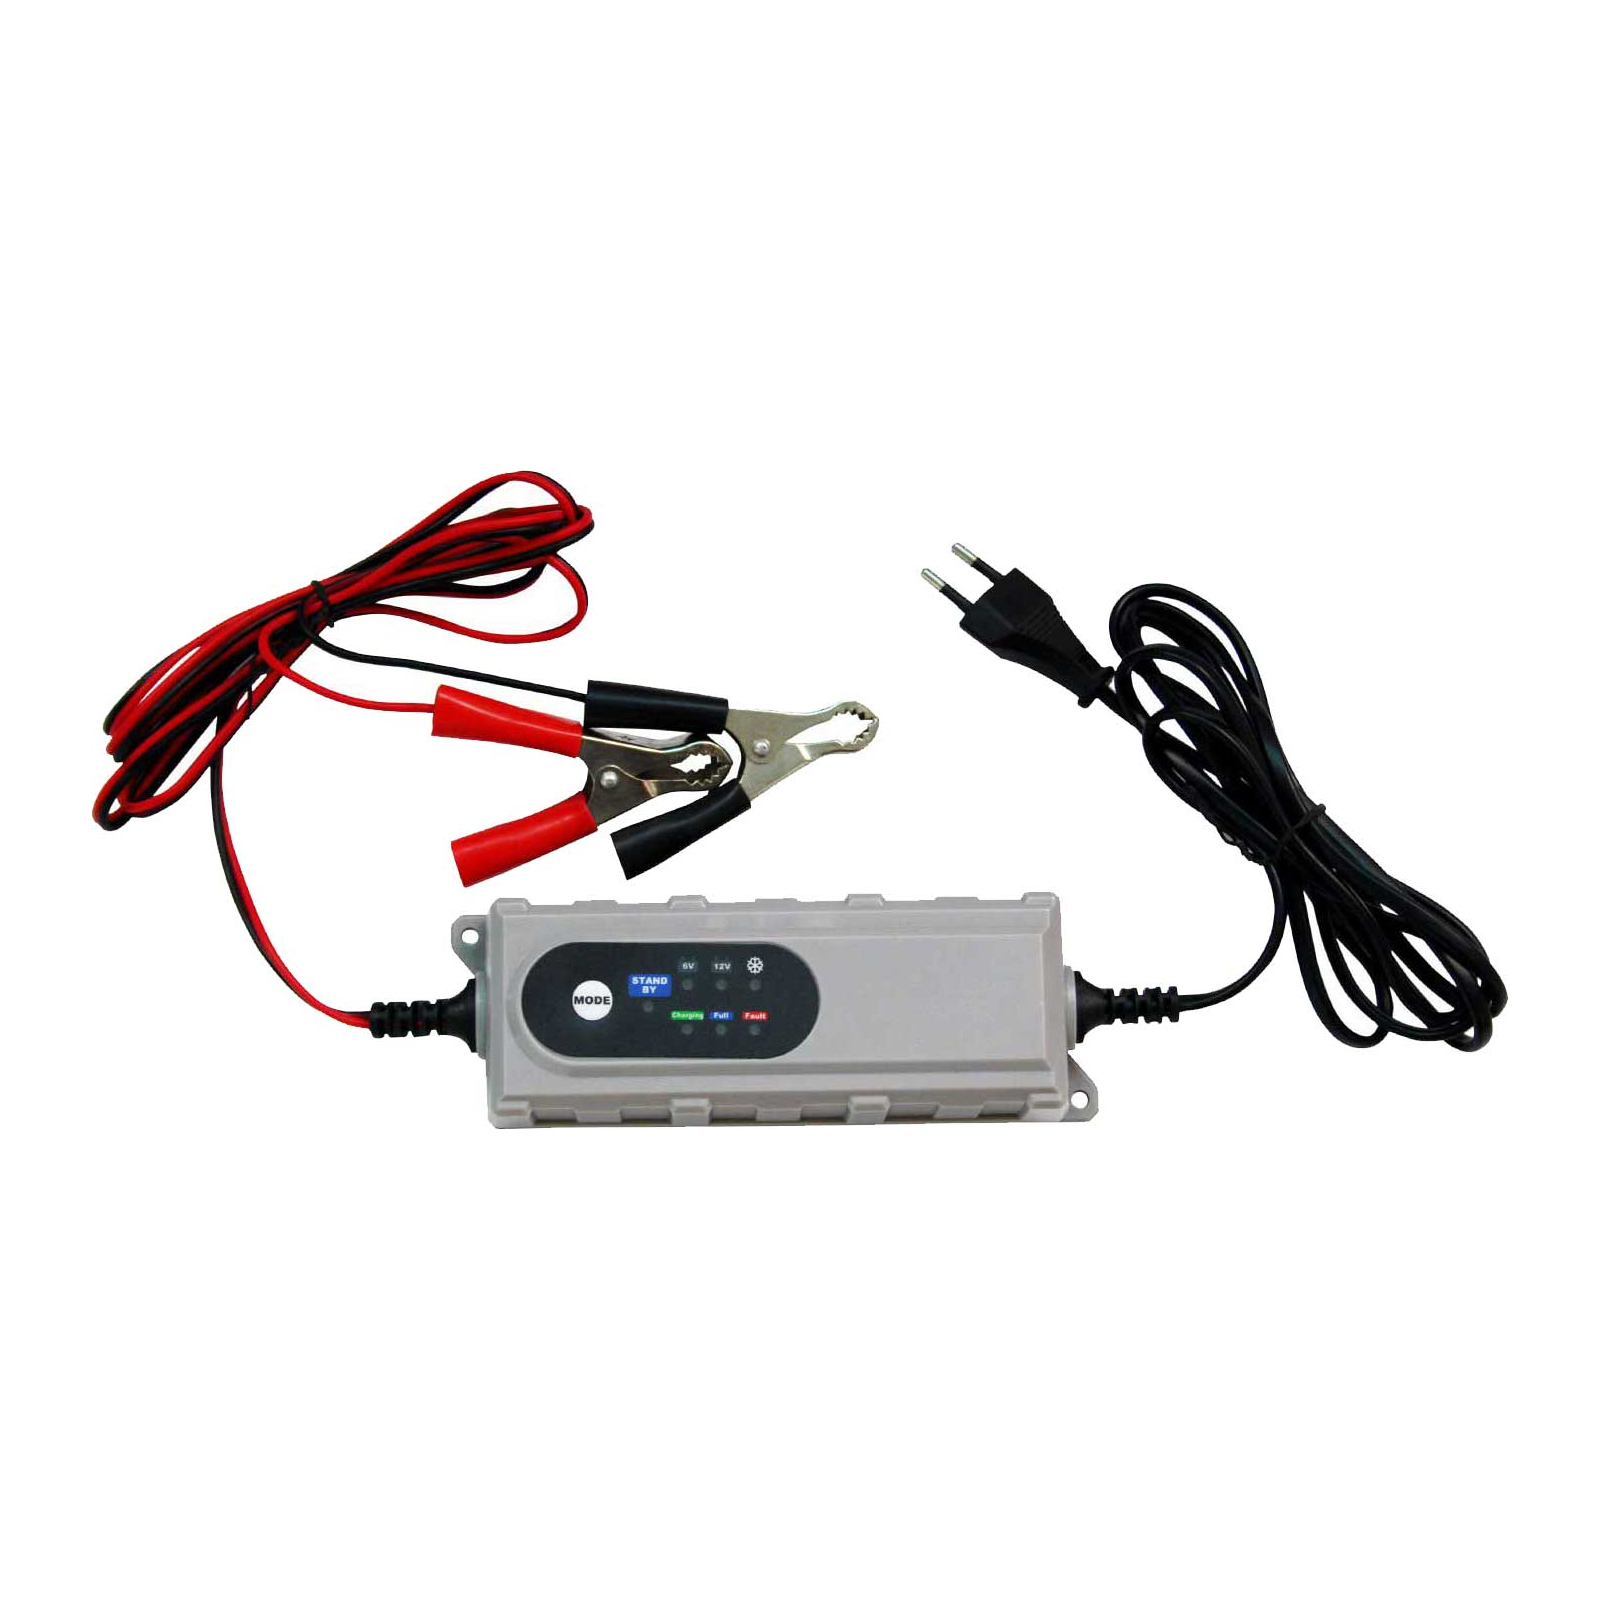 Зарядное устройство для автомобильного аккумулятора Bottari 0,8/4,2a 6v/12v "SMART BC" (28109-IS)